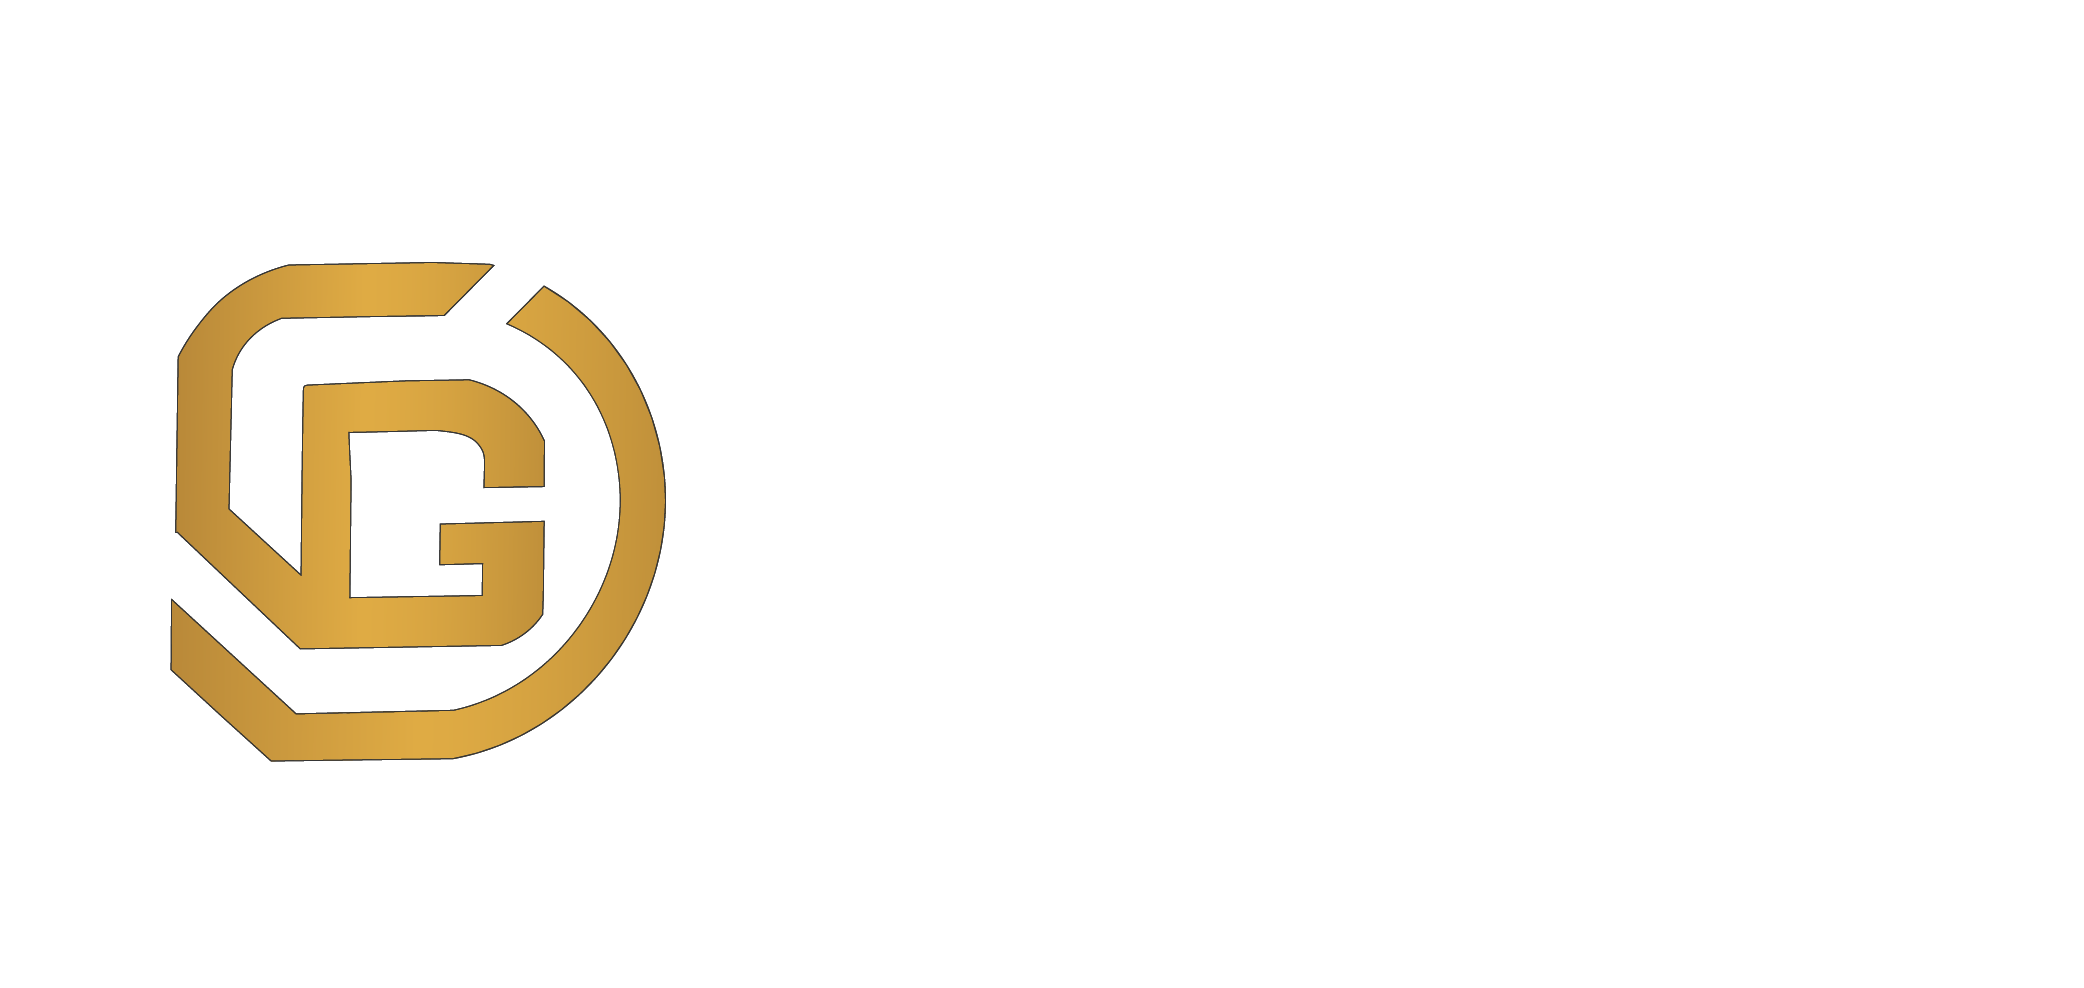 Centenario Gold Corp.